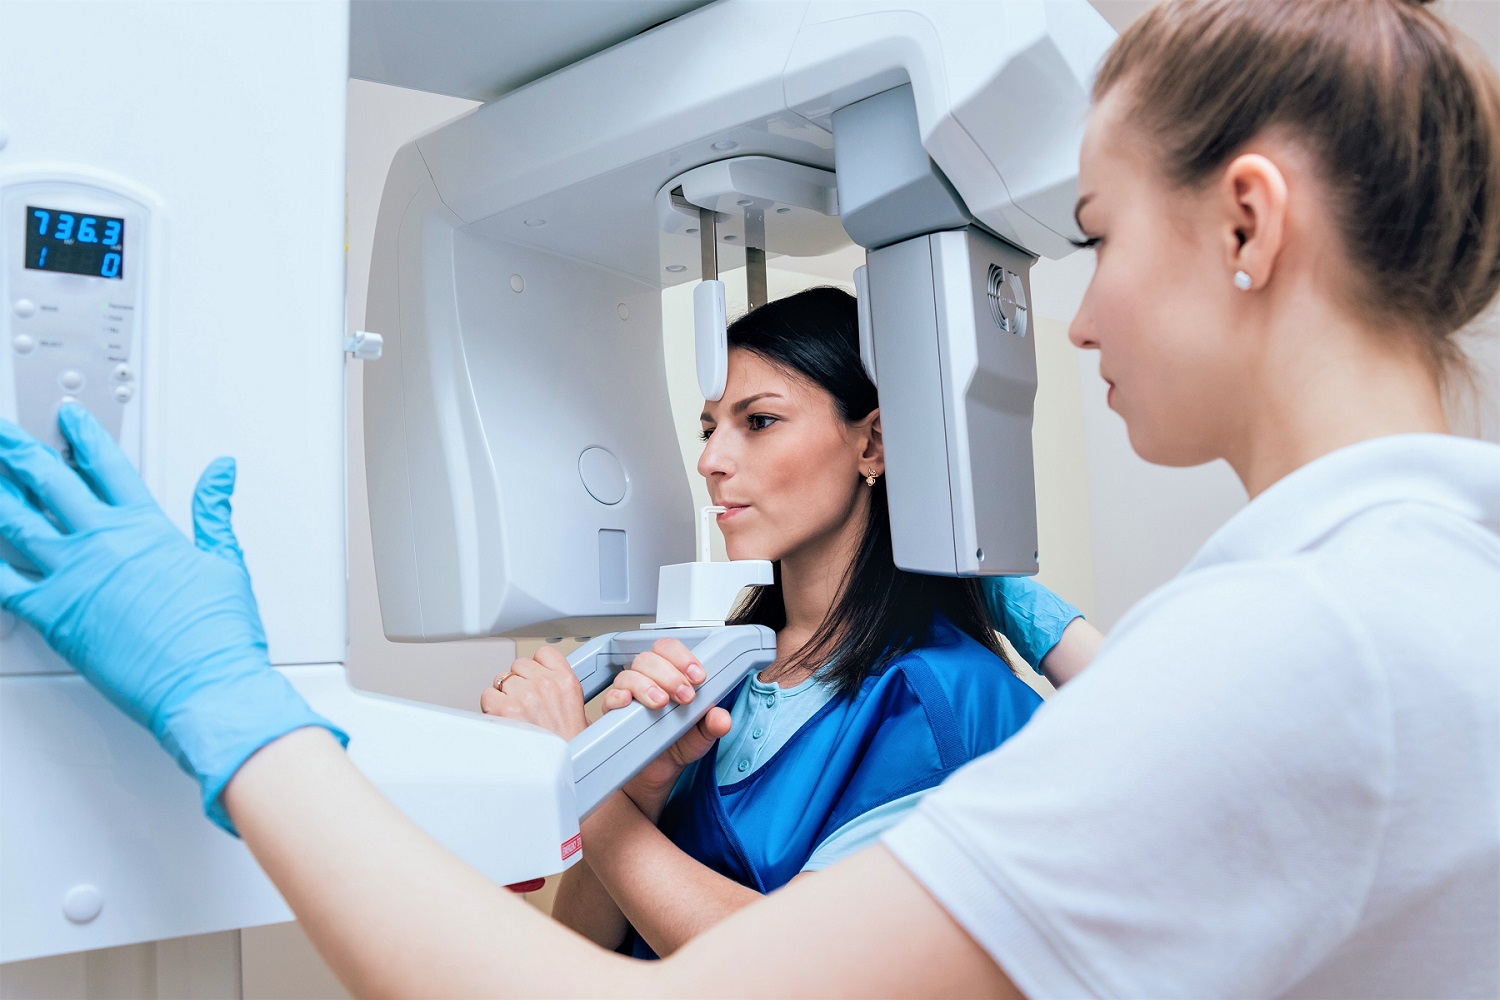 Basic Radiography Safety Training